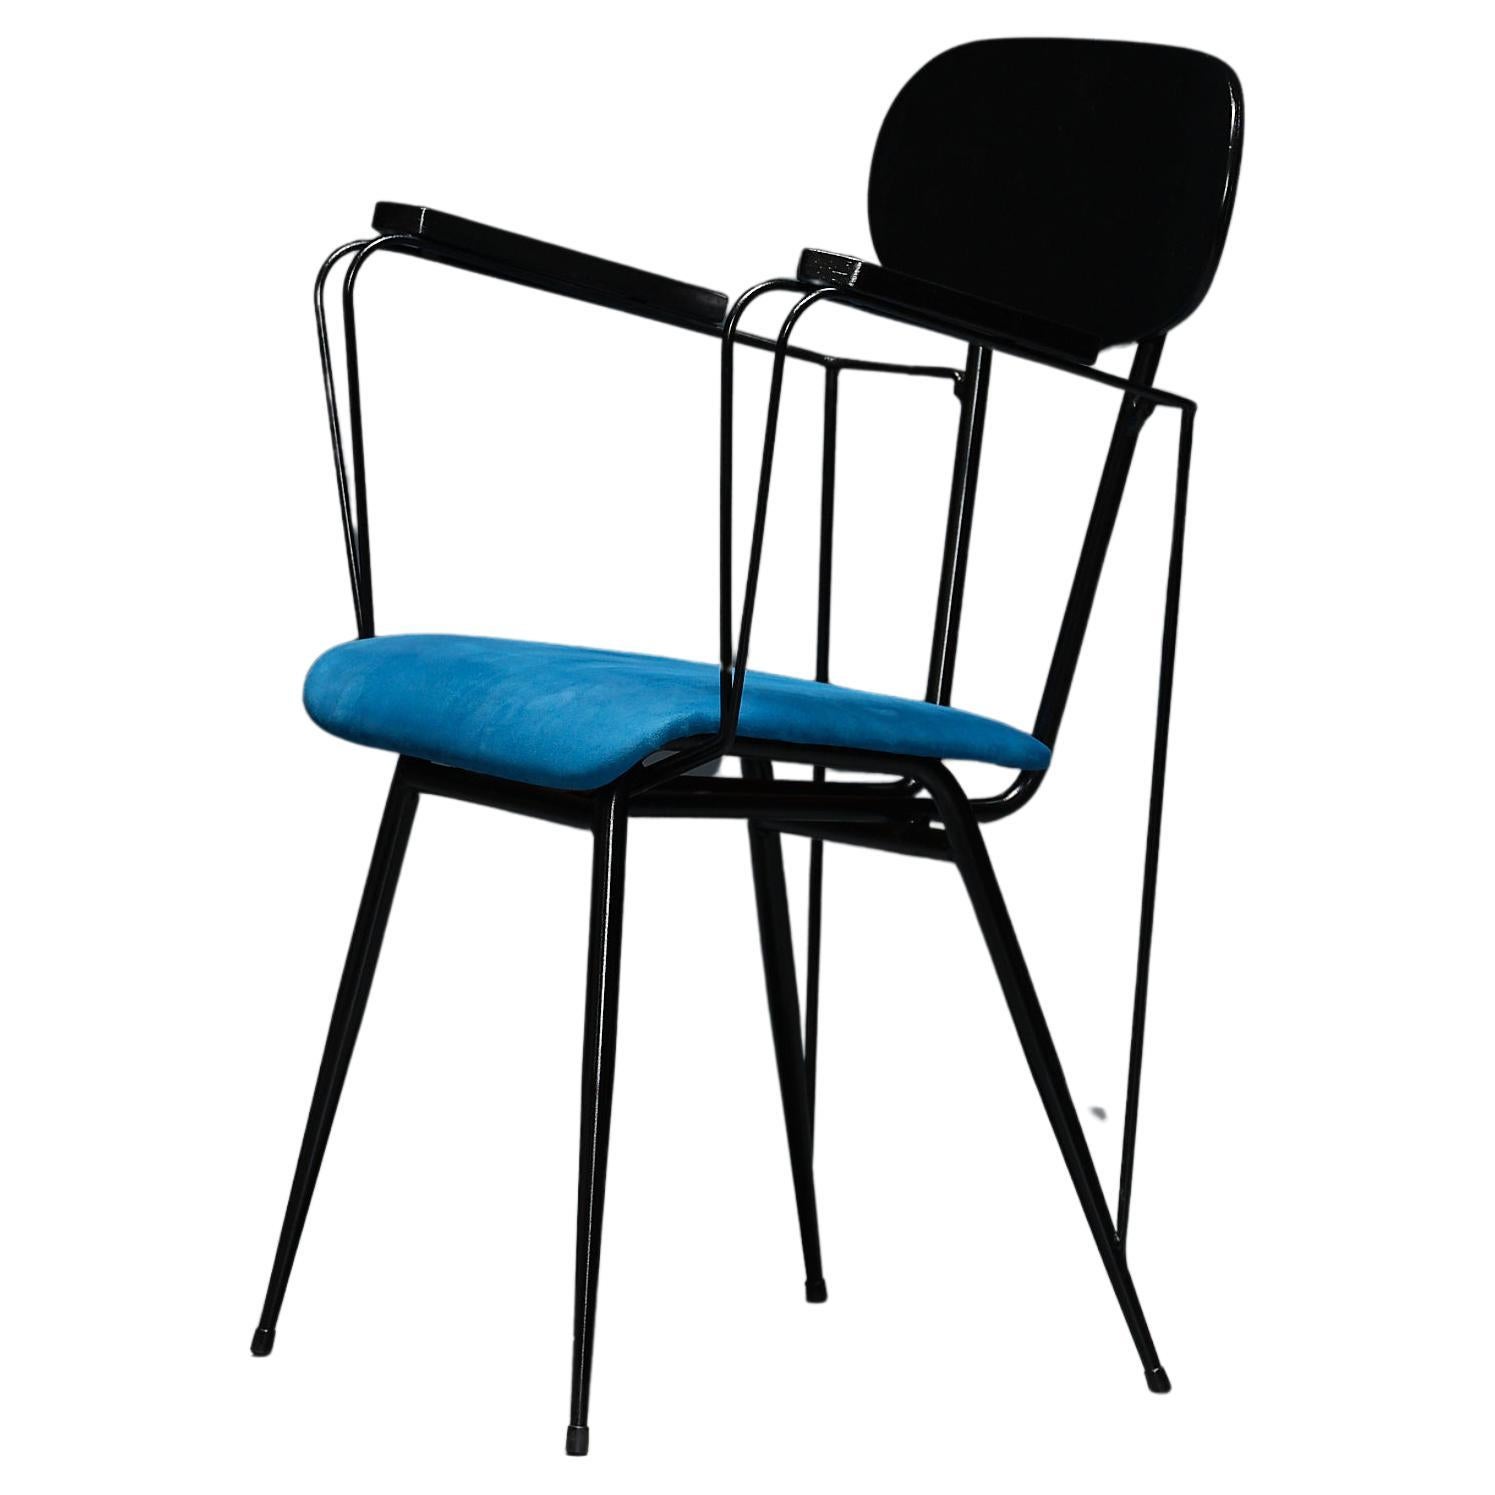 Icone du design italien : Rare chaise de bureau à accoudoirs des années 1950